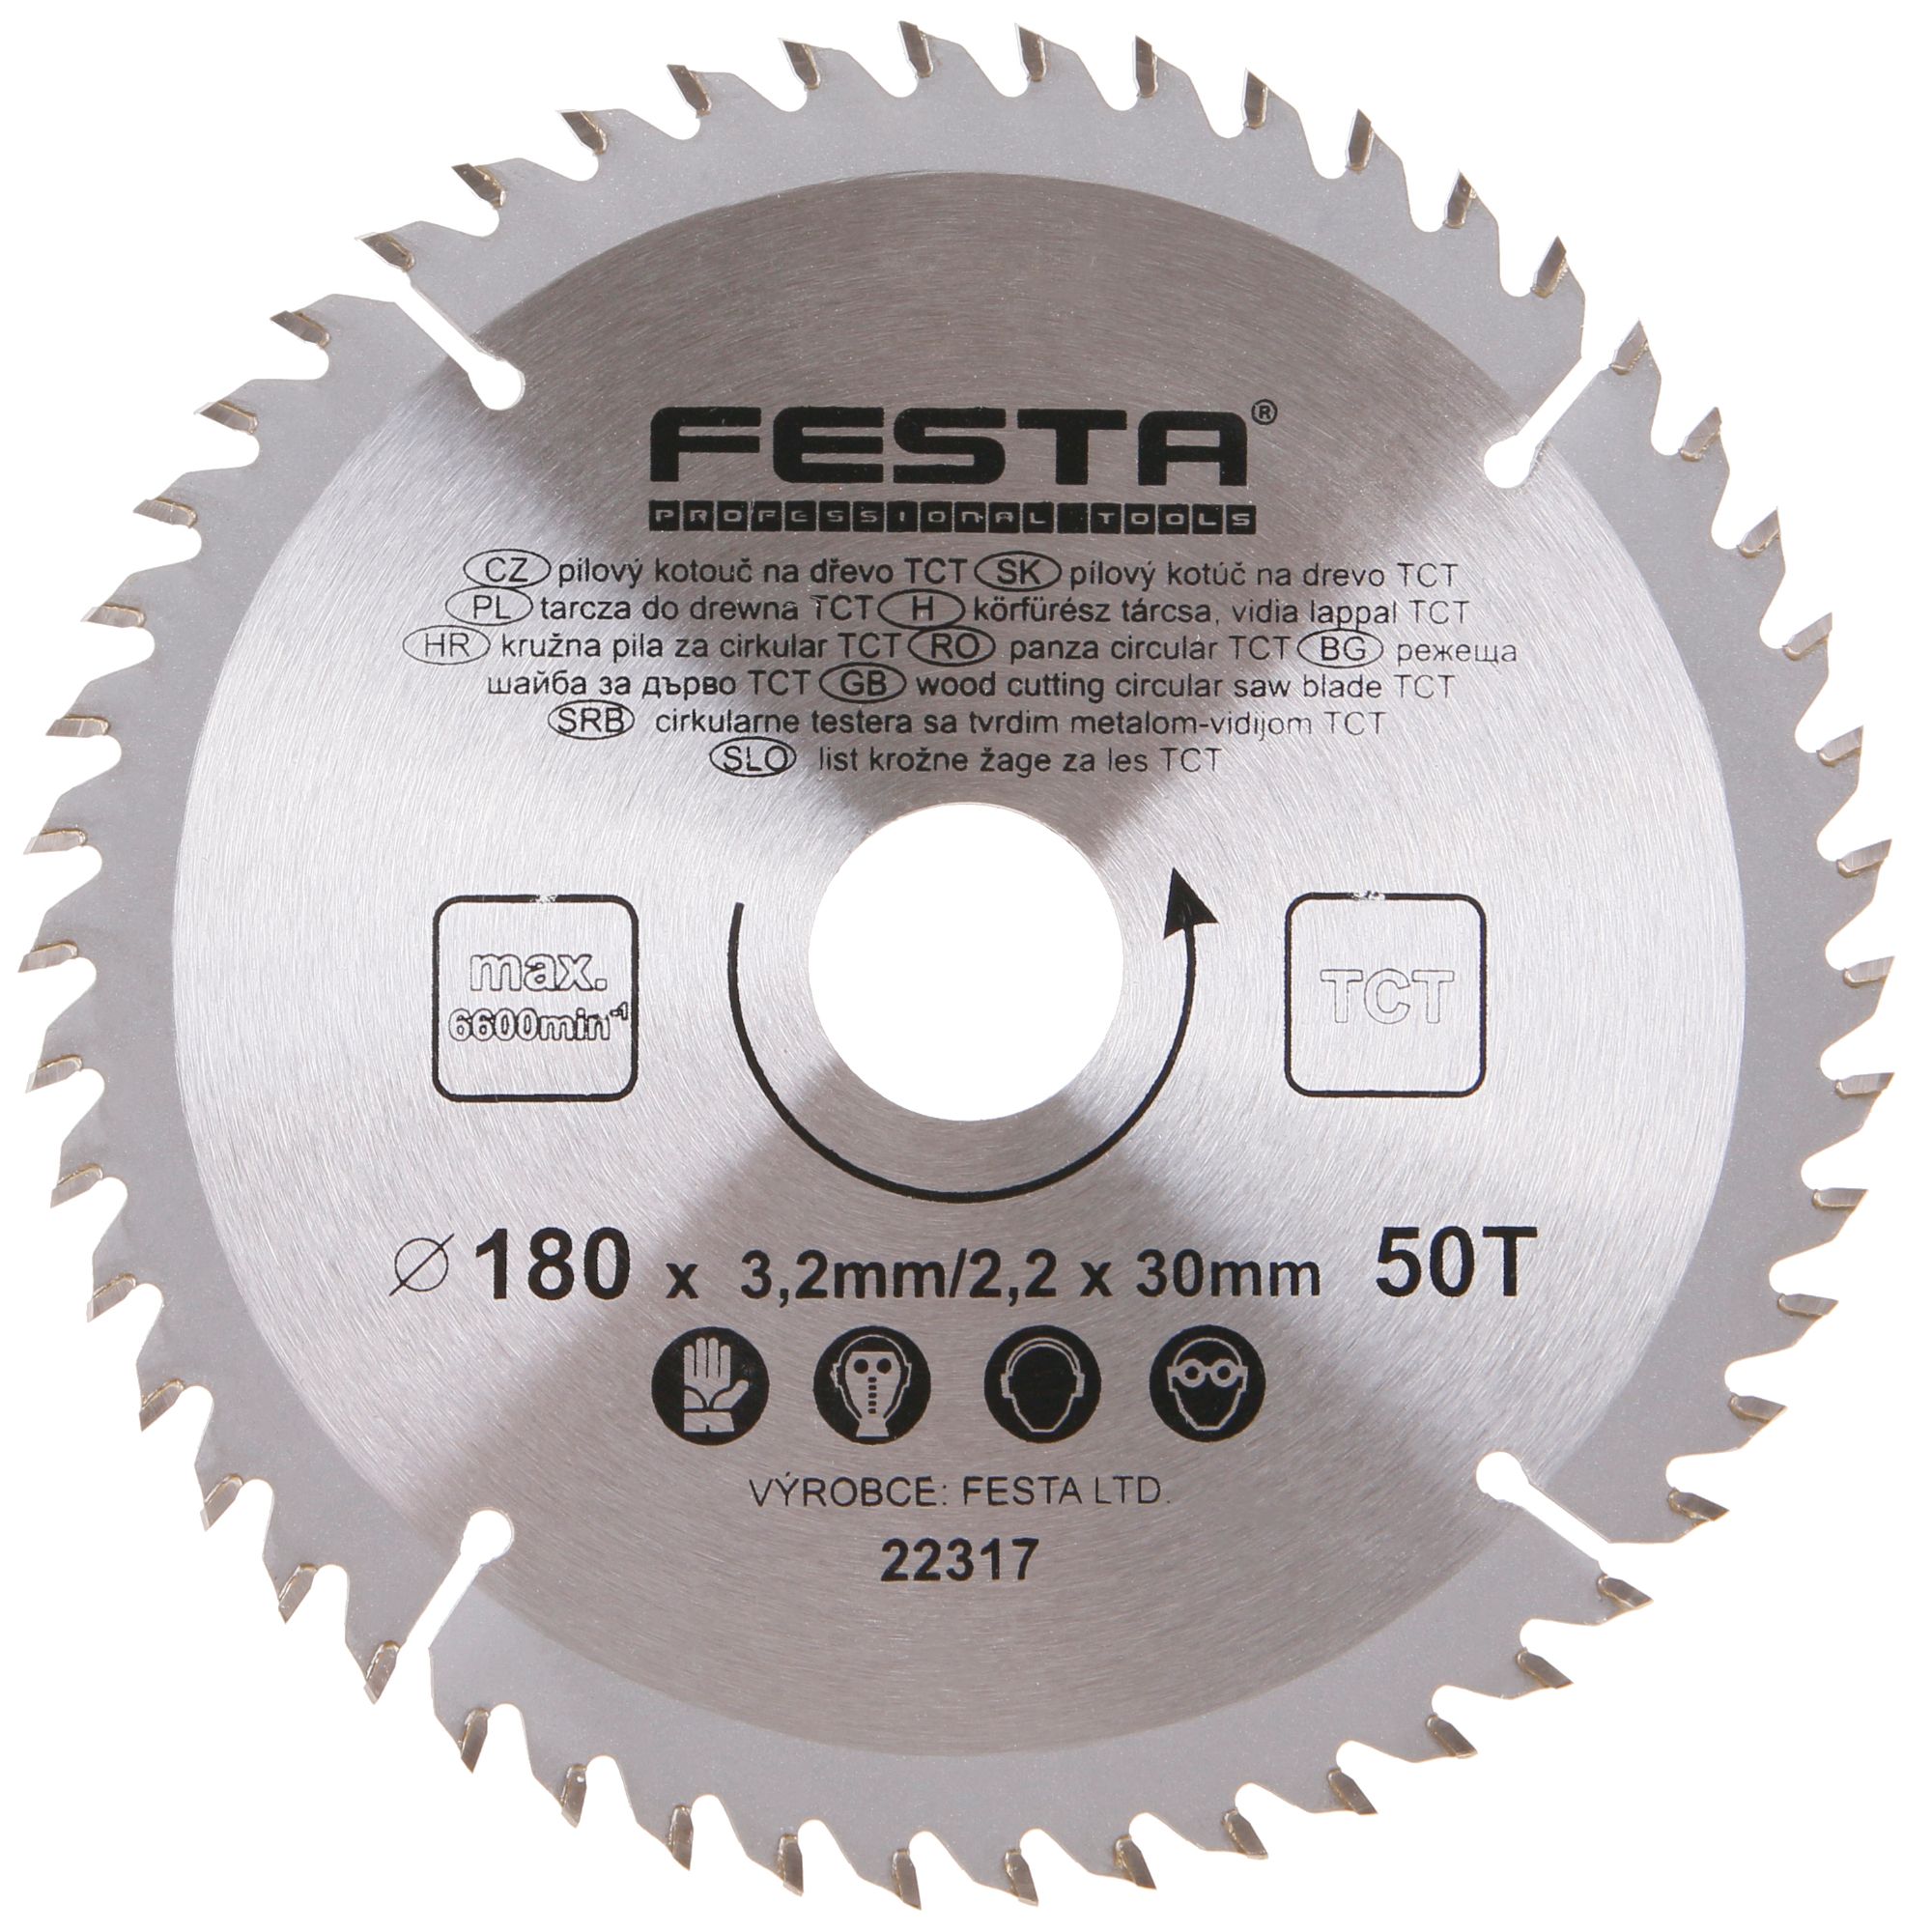 FESTA 22317 Kotouč pilový, na dřevo, 180mm, 50 zubů, 30/20mm, 3,2mm, TCT